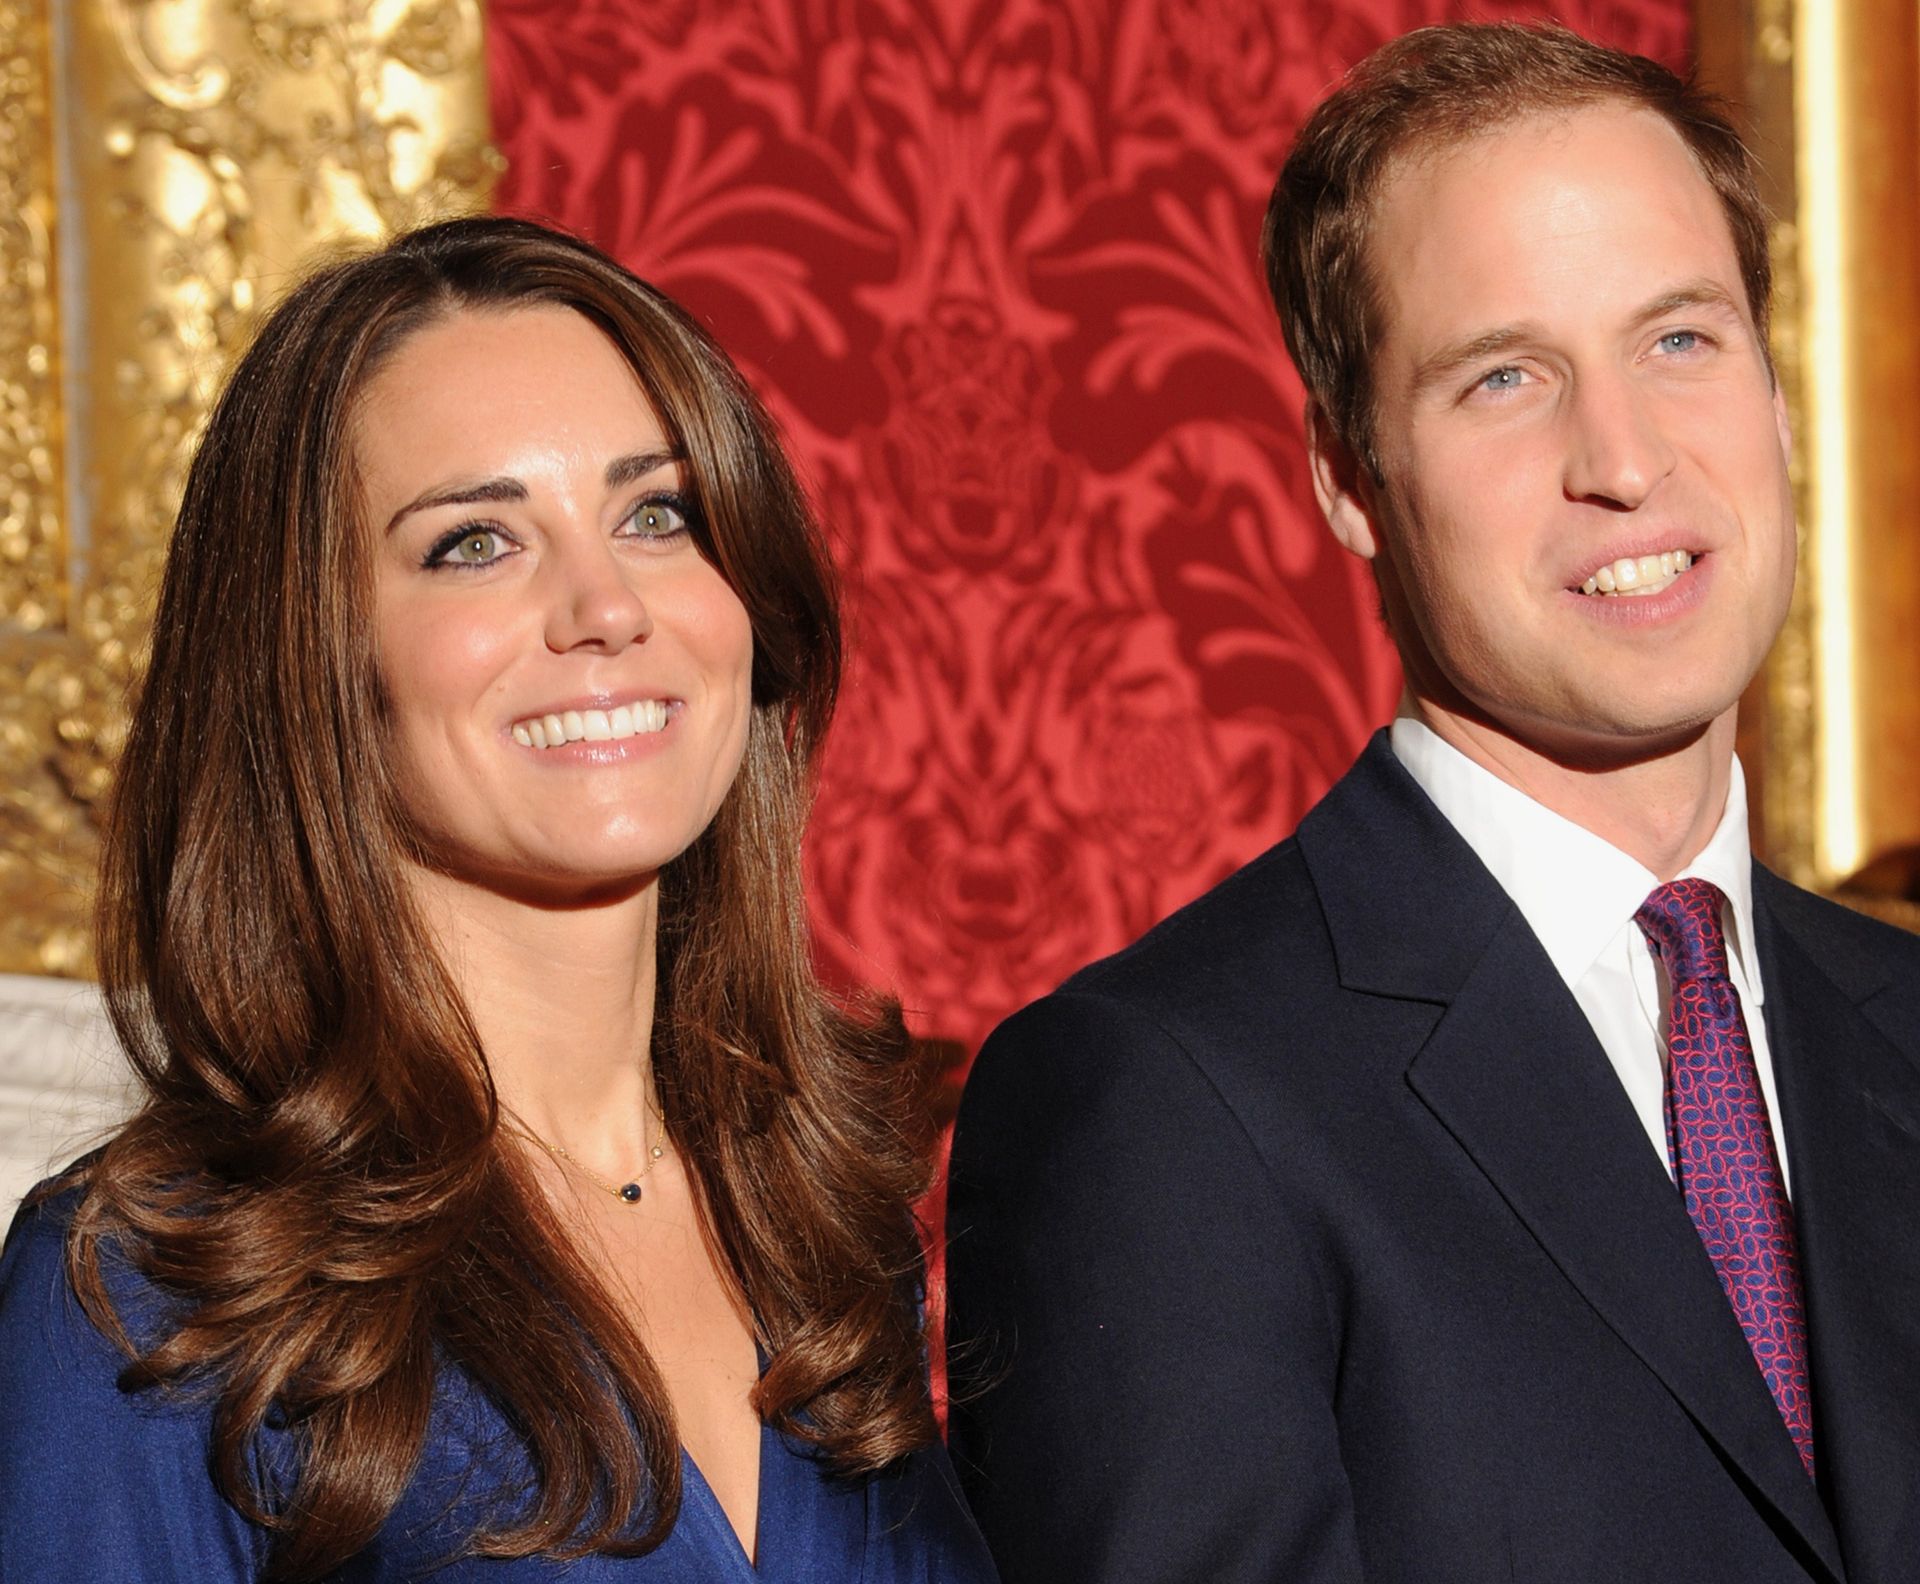 Op 16 november 2010 koningen Catherine en William hun verloving aan. Dit doen zij op St James's